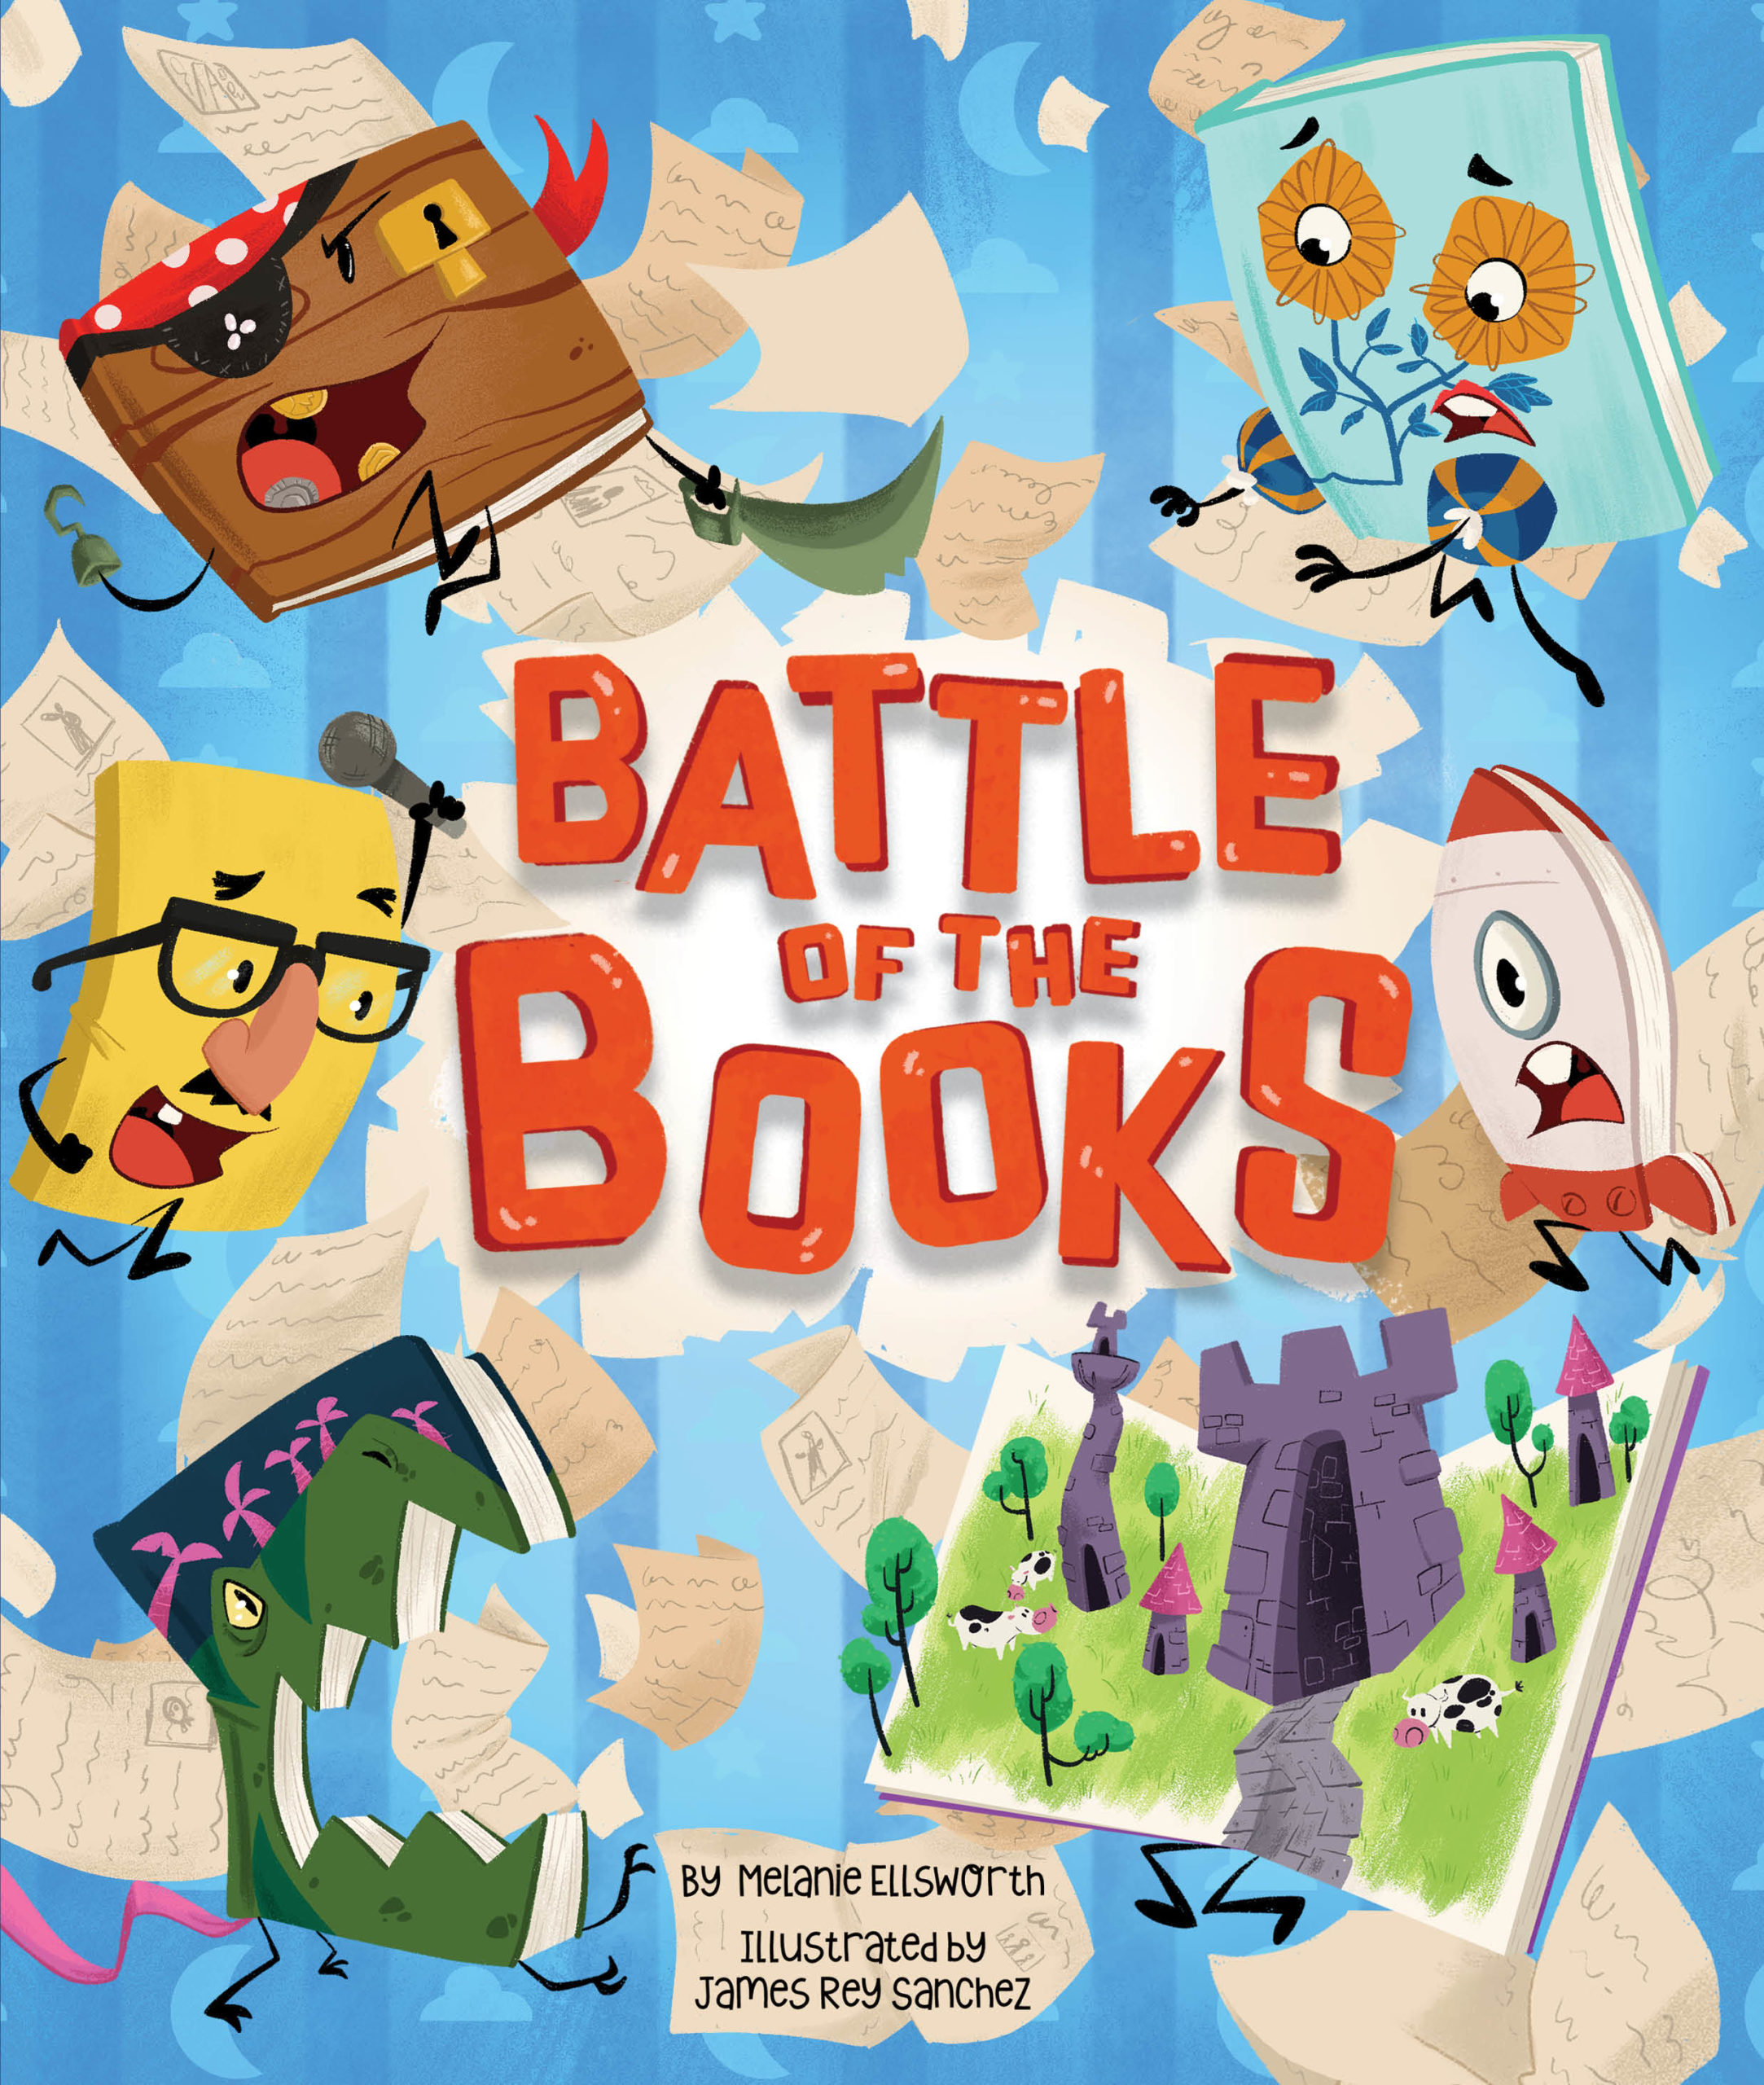 Battle book. Animals Battle book.